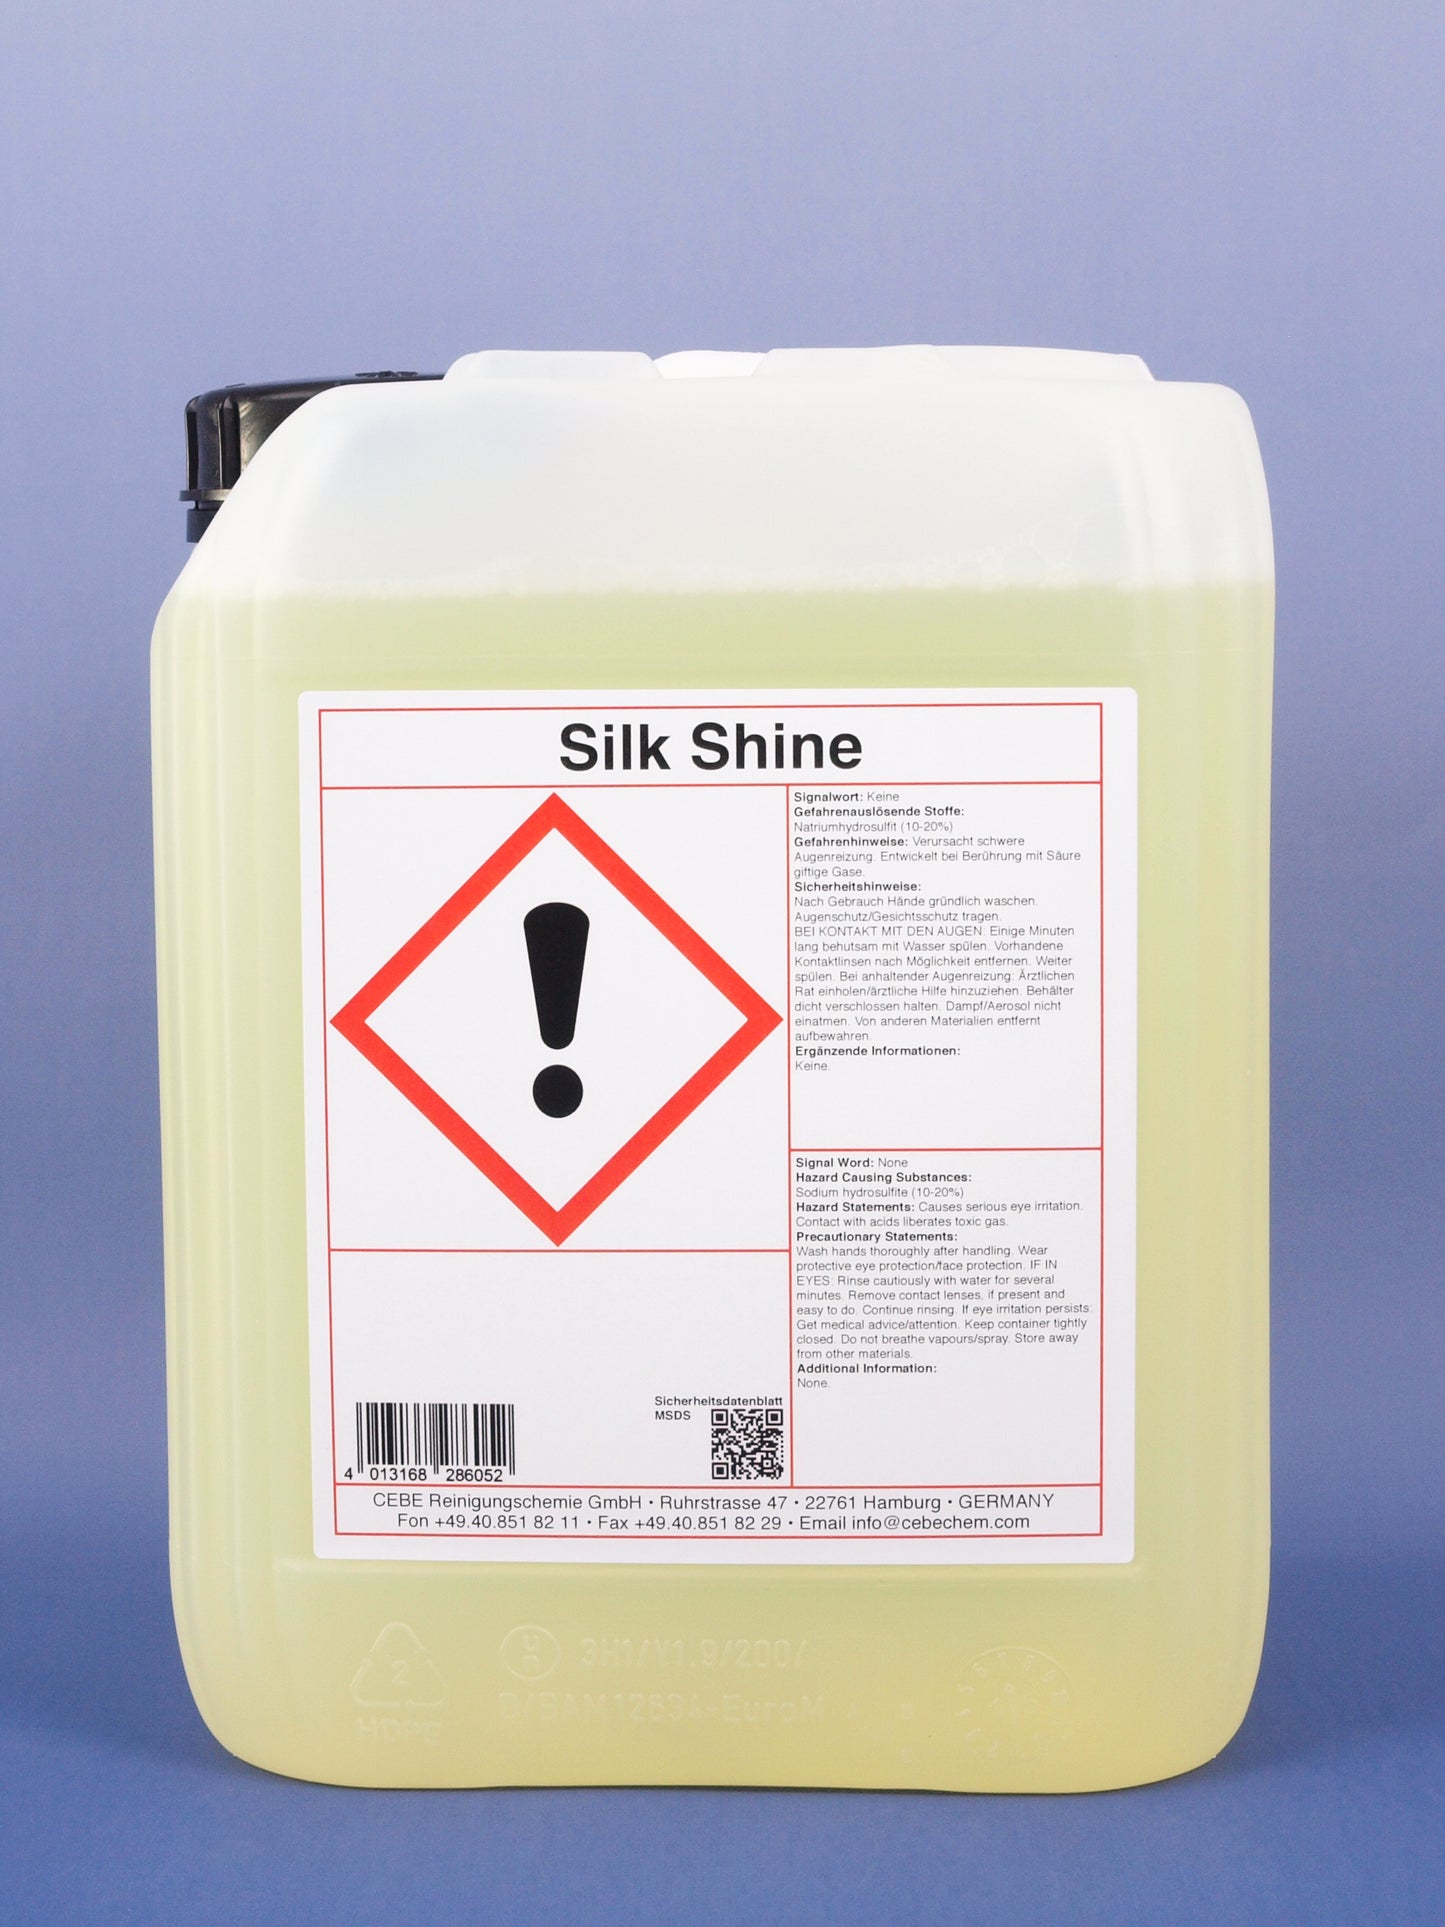 Silk Shine